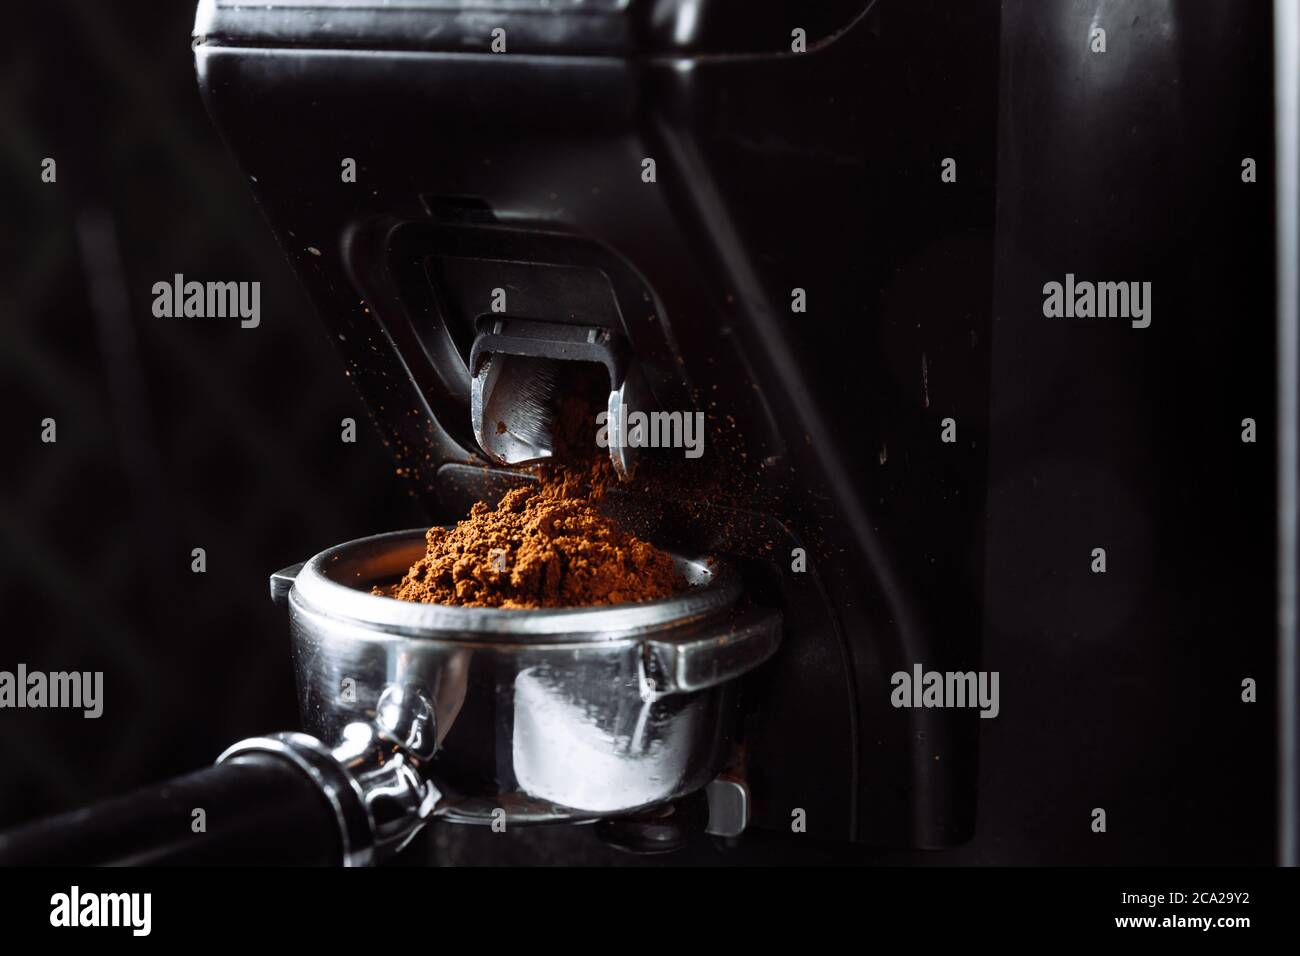 https://c8.alamy.com/compes/2ca29y2/el-cafe-molido-fresco-cae-en-el-portafiltro-del-molinillo-elaboracion-de-un-proceso-de-espresso-2ca29y2.jpg